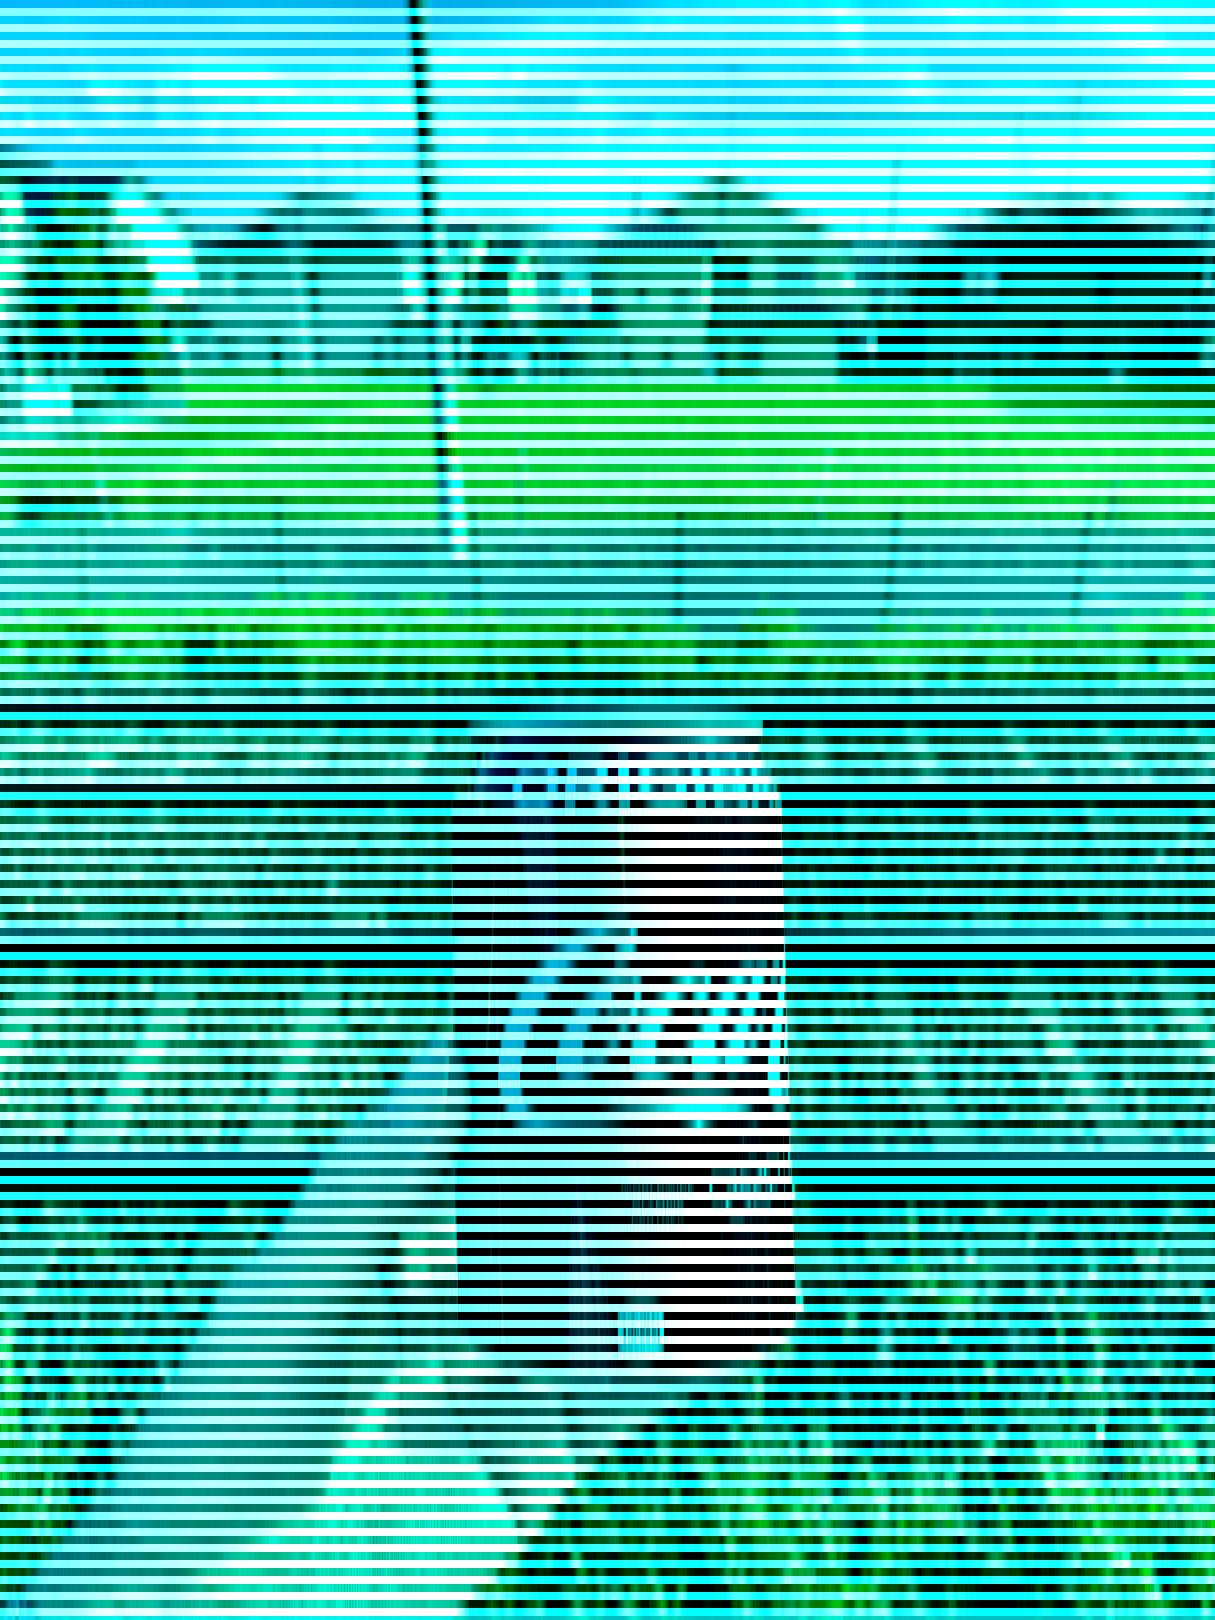 No hay píxeles rojos en esta imagen de una lata de Coca-Cola